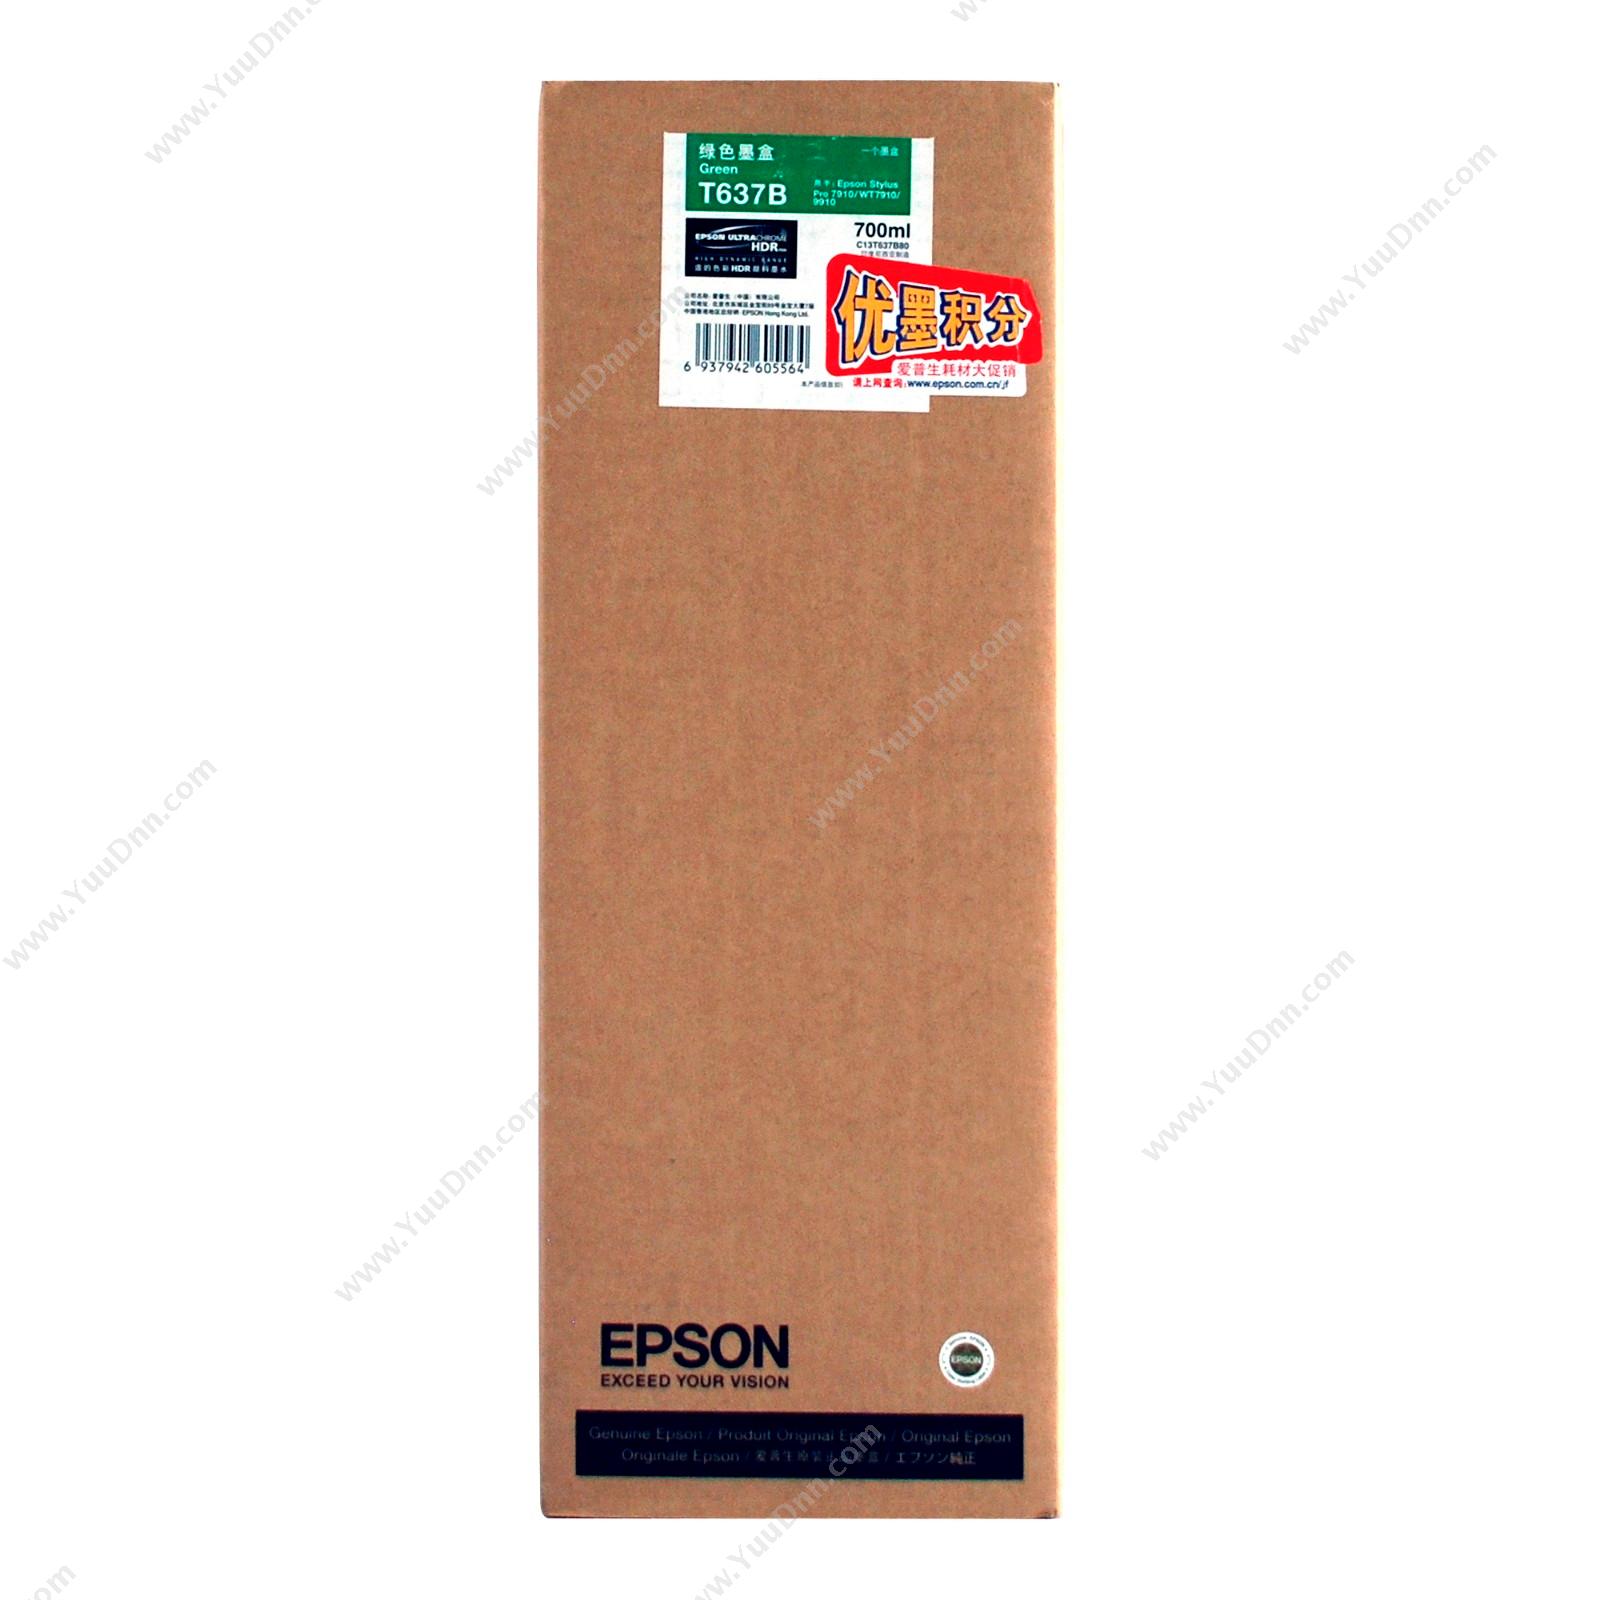 爱普生 Epson Pro9910绿墨700ml（C13T637B80） 墨盒